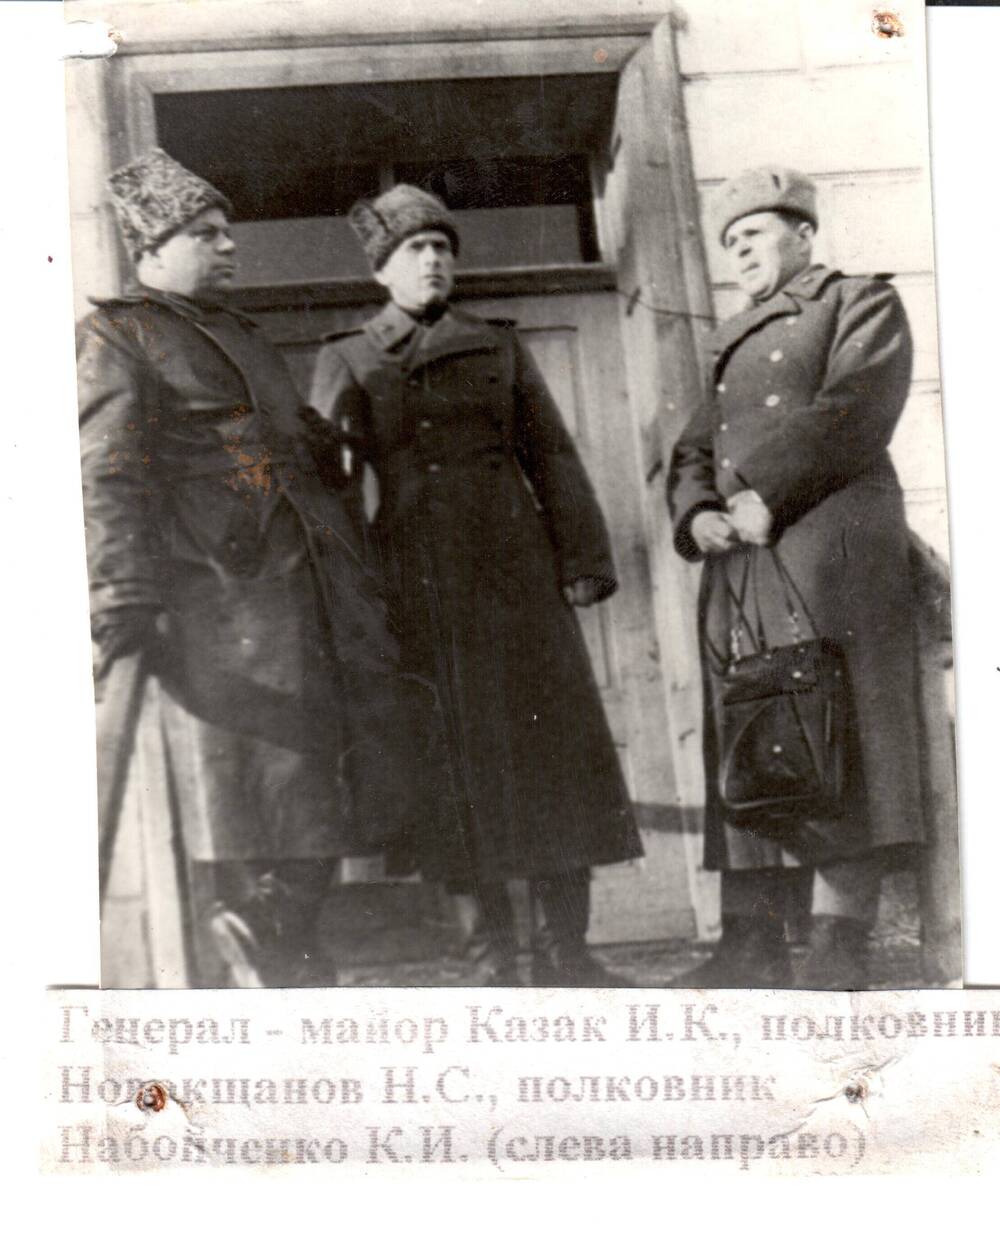 Фотография генерал-майора Казака И.К, полковника Новокищанова Н.С., полковника Набойченко К.И.